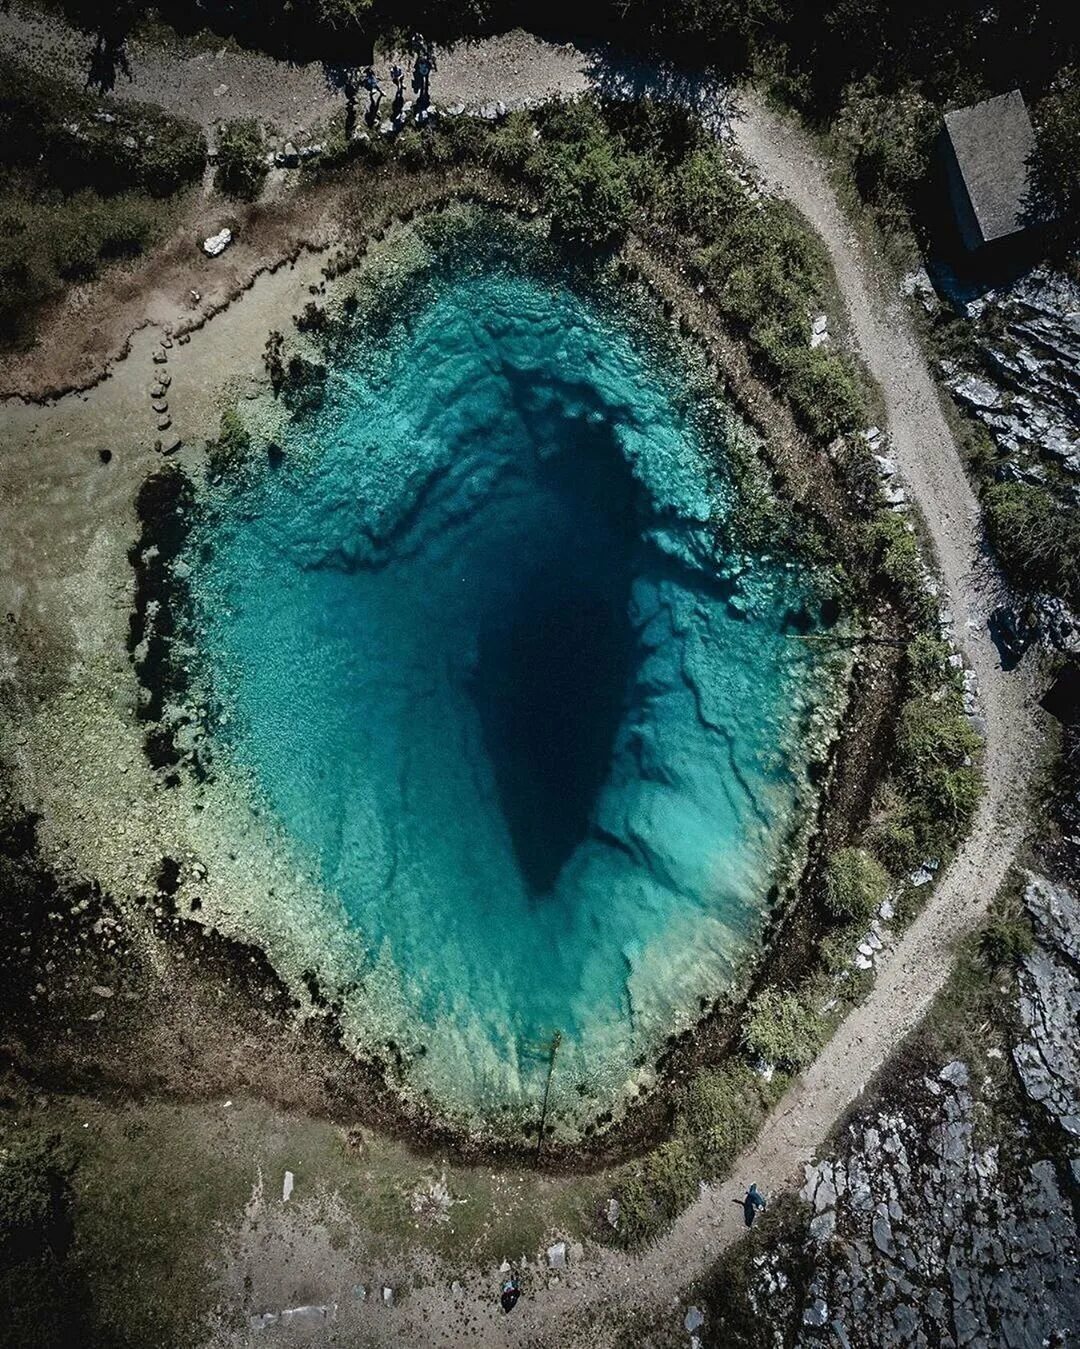 Месте не очень глубокая. Хорватия, «глаз земли» озеро Главашево. Озеро Главашево Хорватия. Озеро Цетина Хорватия. Далмация Хорватия голубая дыра.